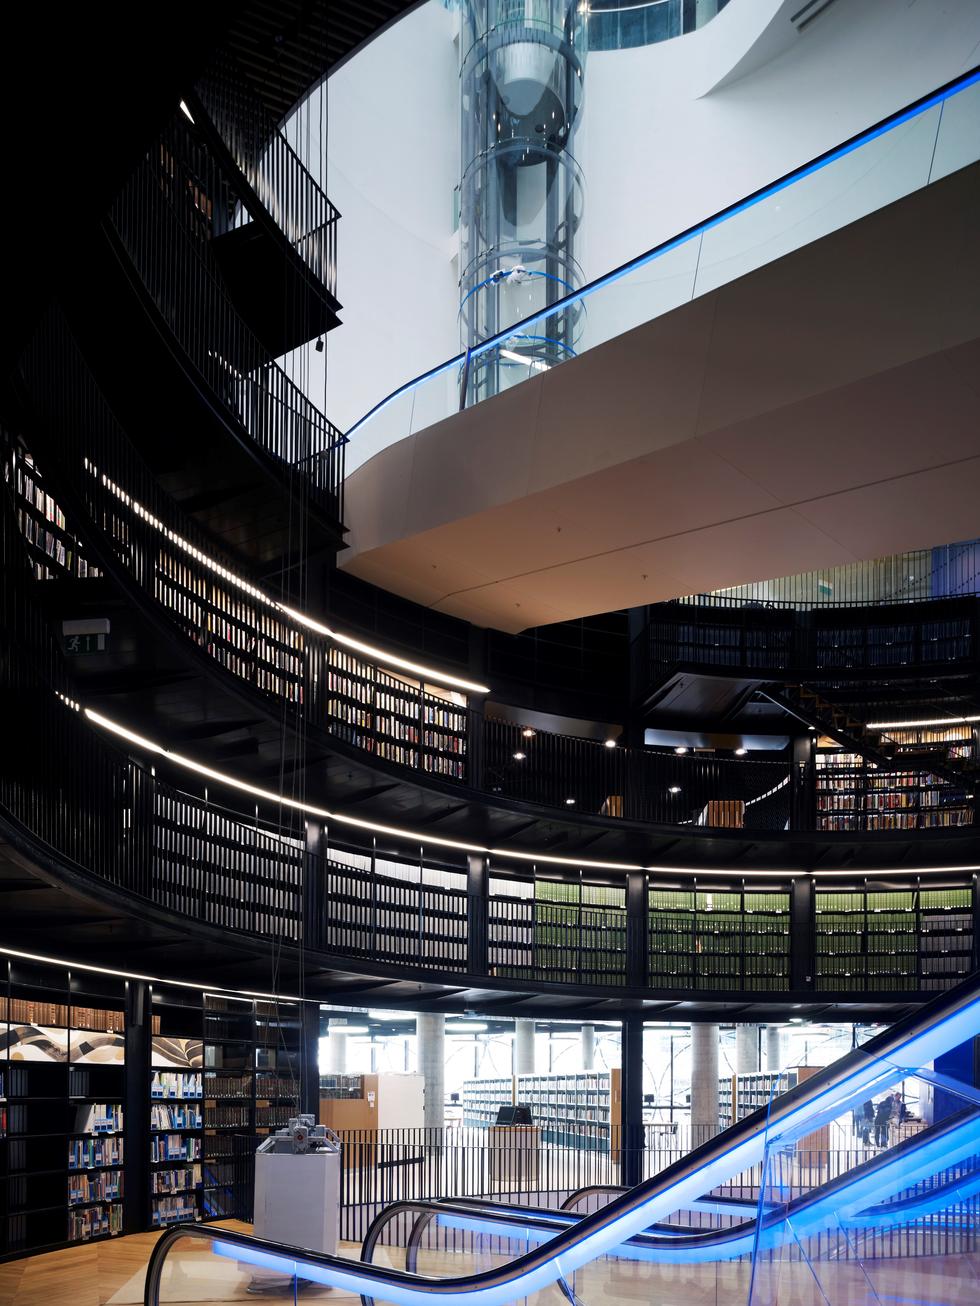 Centralna rotunda biblioteki w Birmingham; widoczne ruchome schody. Fot. ©Christian Richters